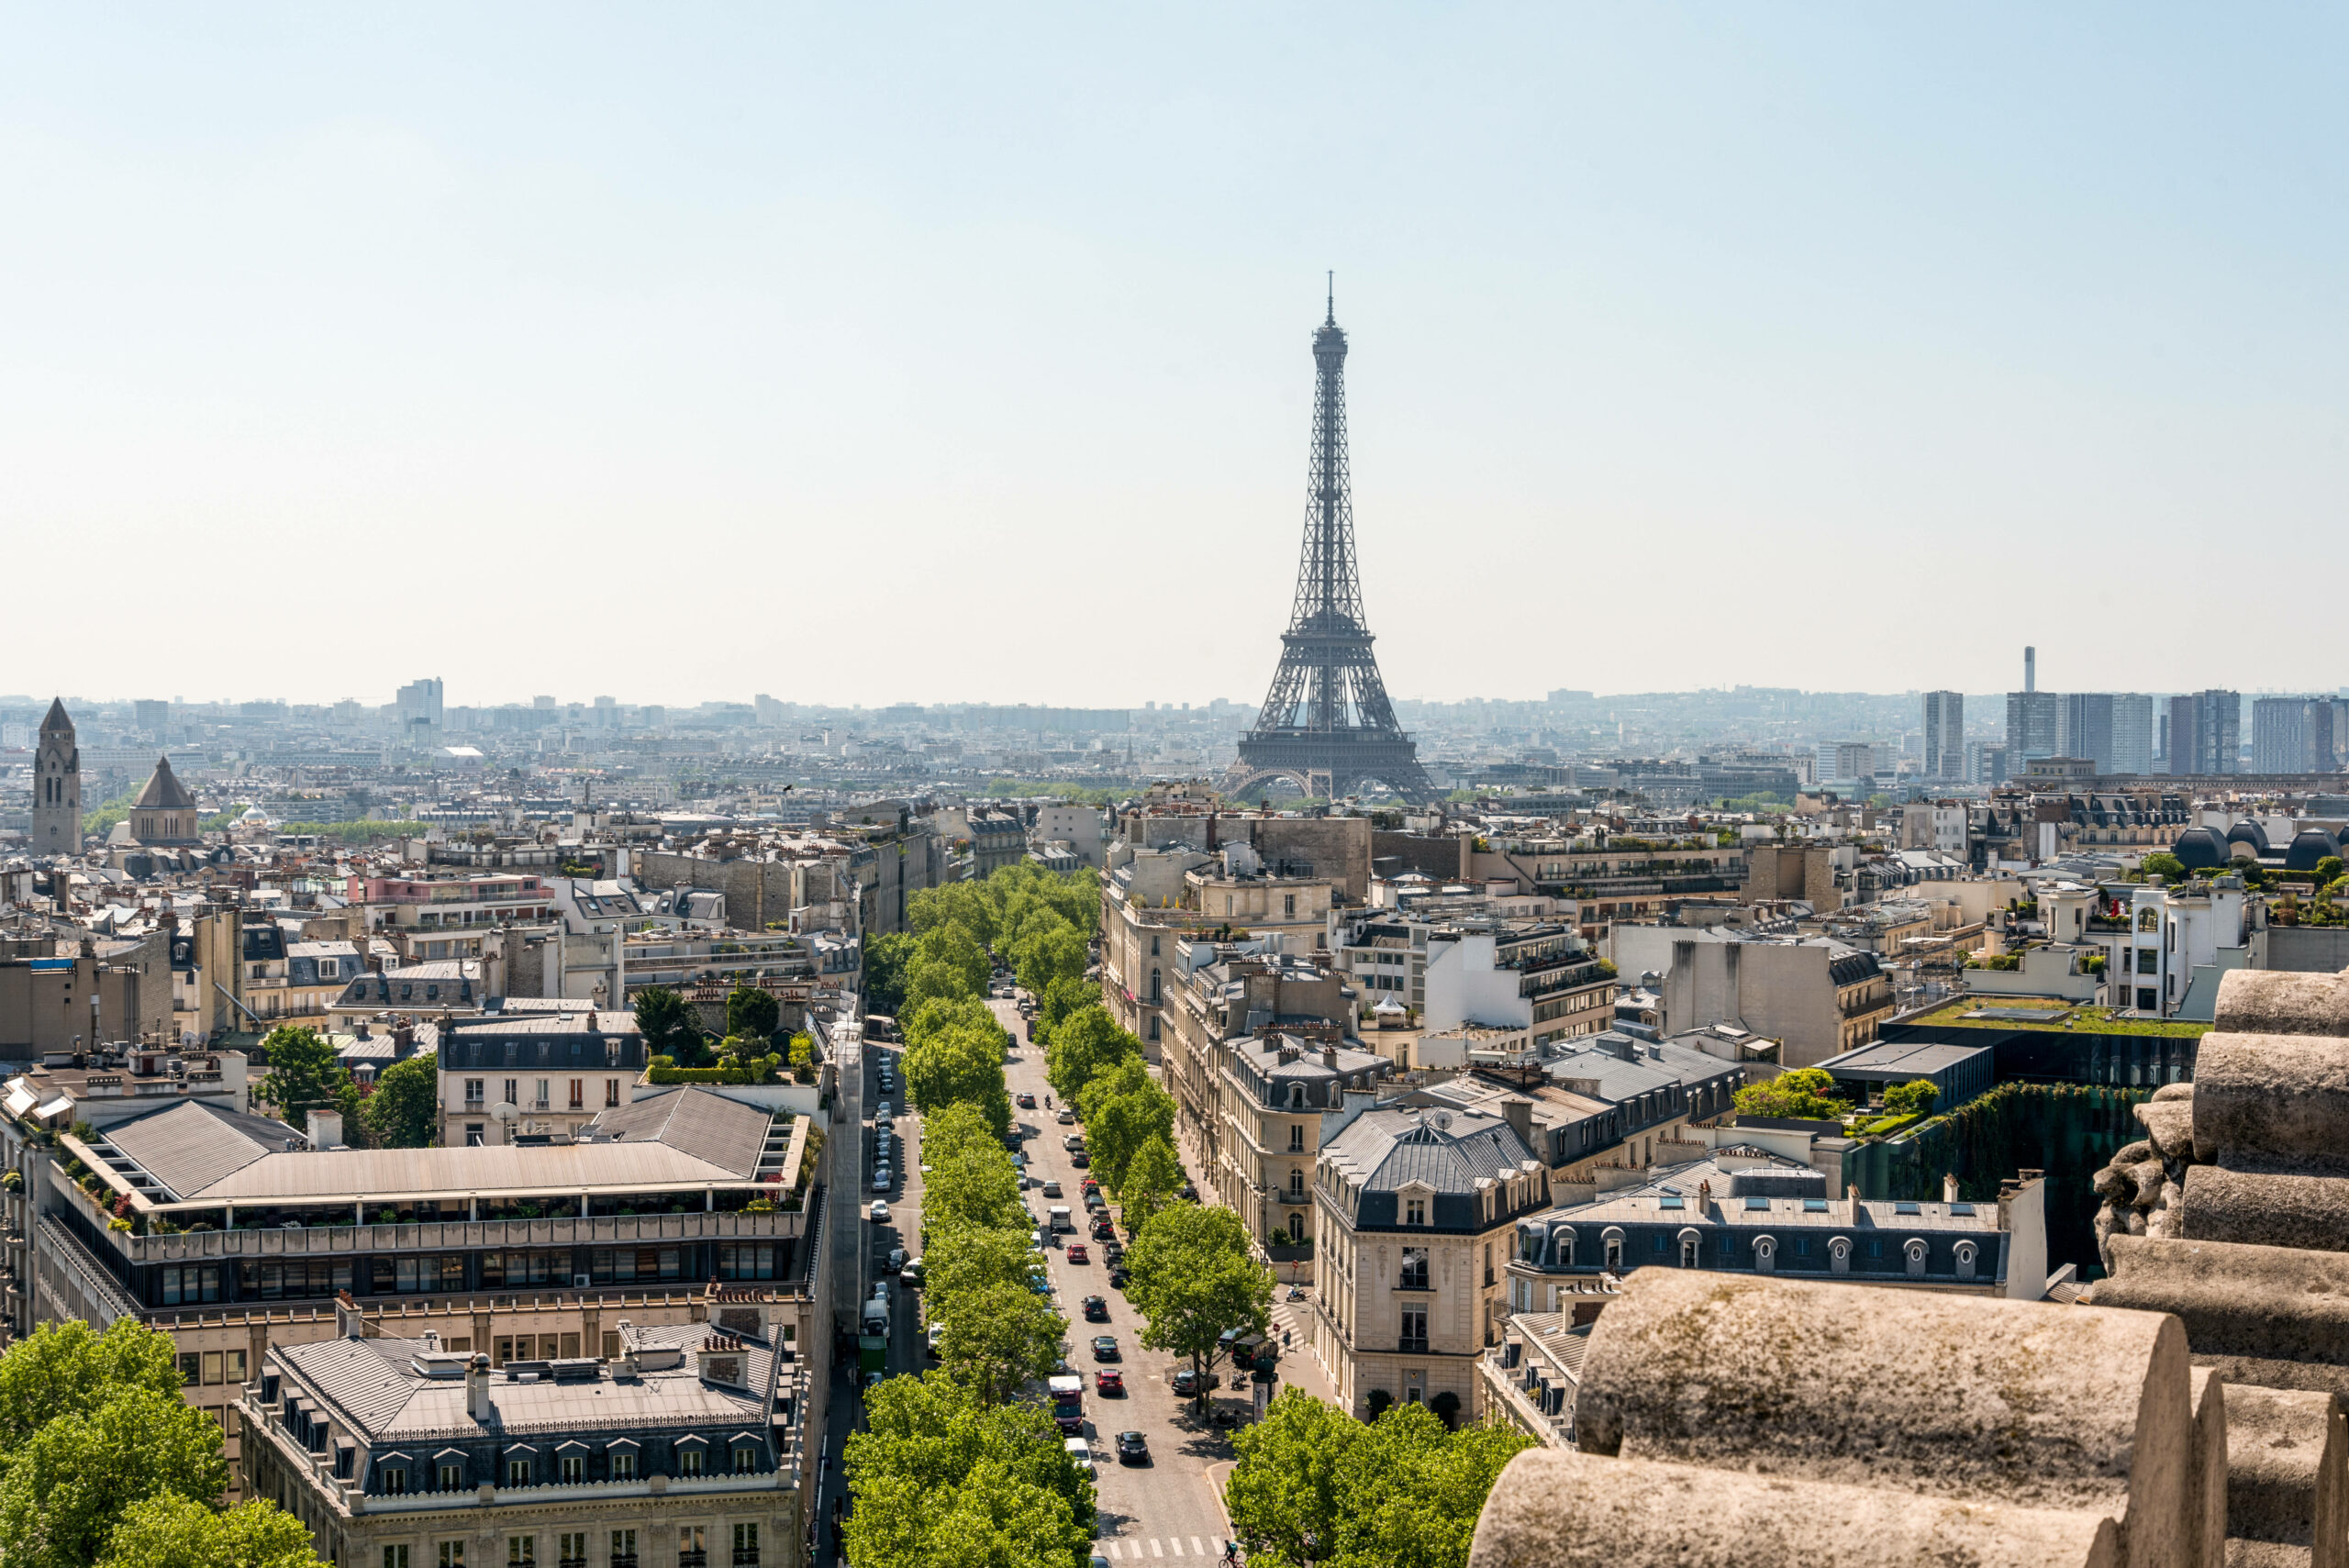 Der Eiffelturm in der Ferne ragt zwischen den Häusern von Paris hervor.